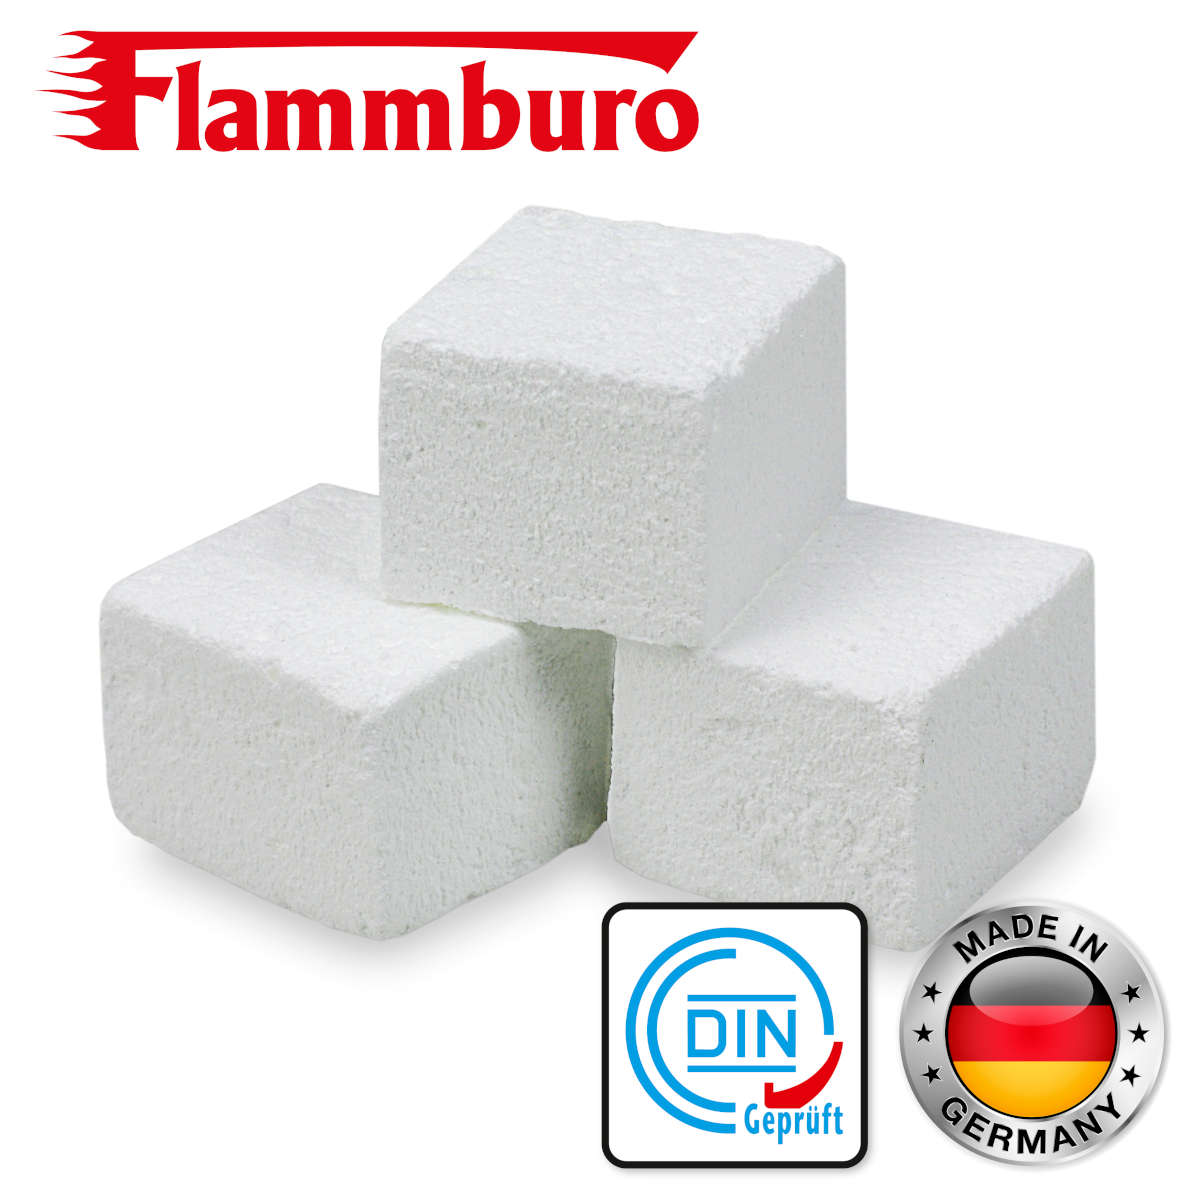 Kohleanzünder Grillanzünder Kaminanzünder Anzündwürfel Paraffinanzünder FLAMMBURO DIN und Made in Germany Logo